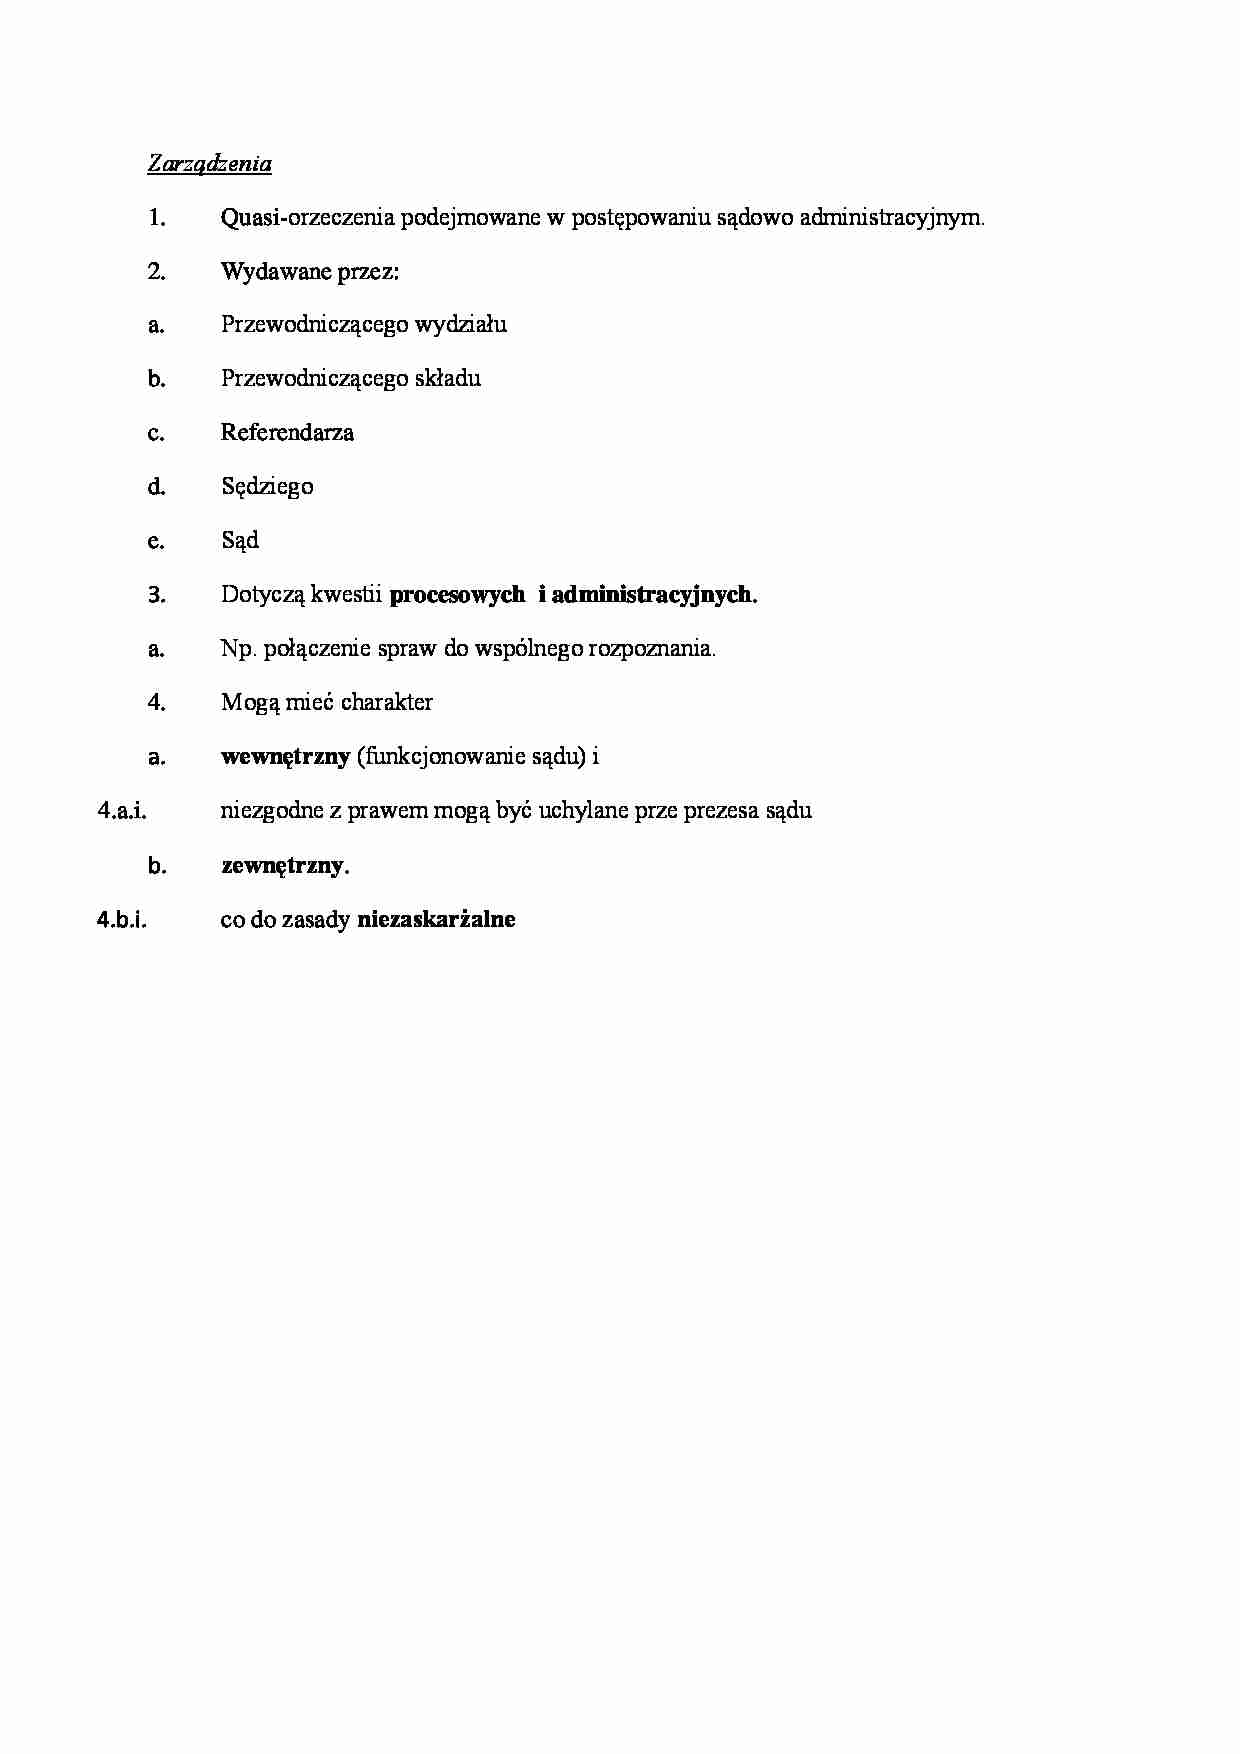 Postępowanie administracyjne - zarządzenia - strona 1